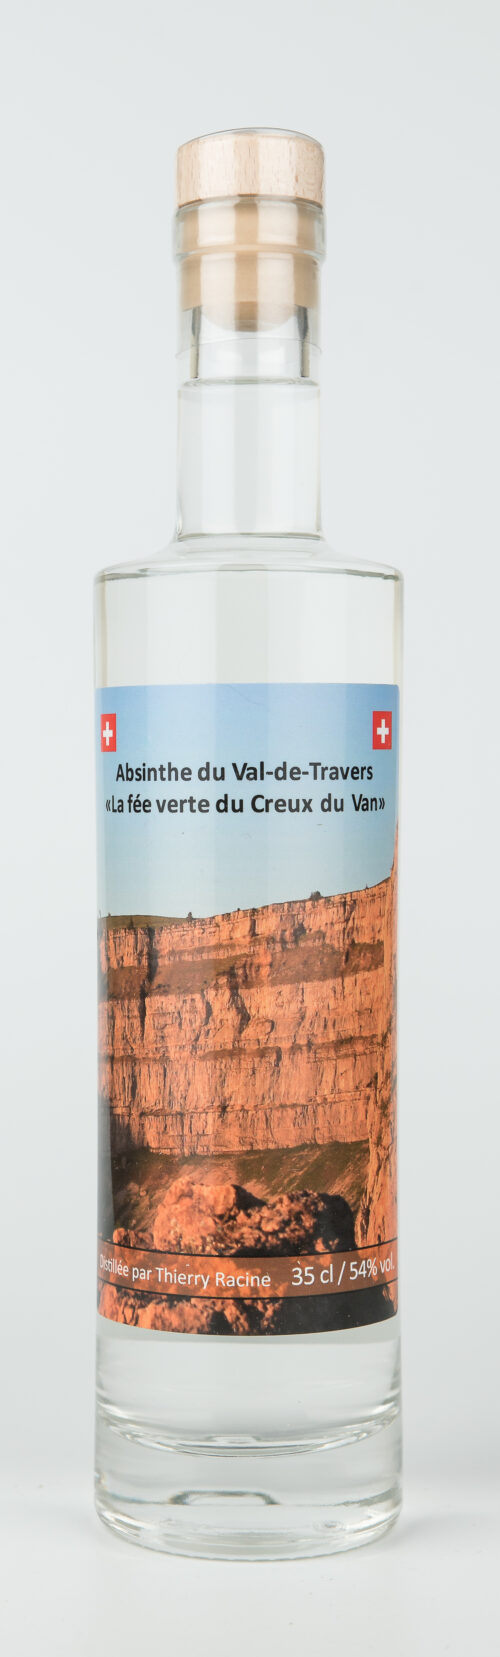 Absinthe du Val-de-Travers « La fée verte du Creux du Van »